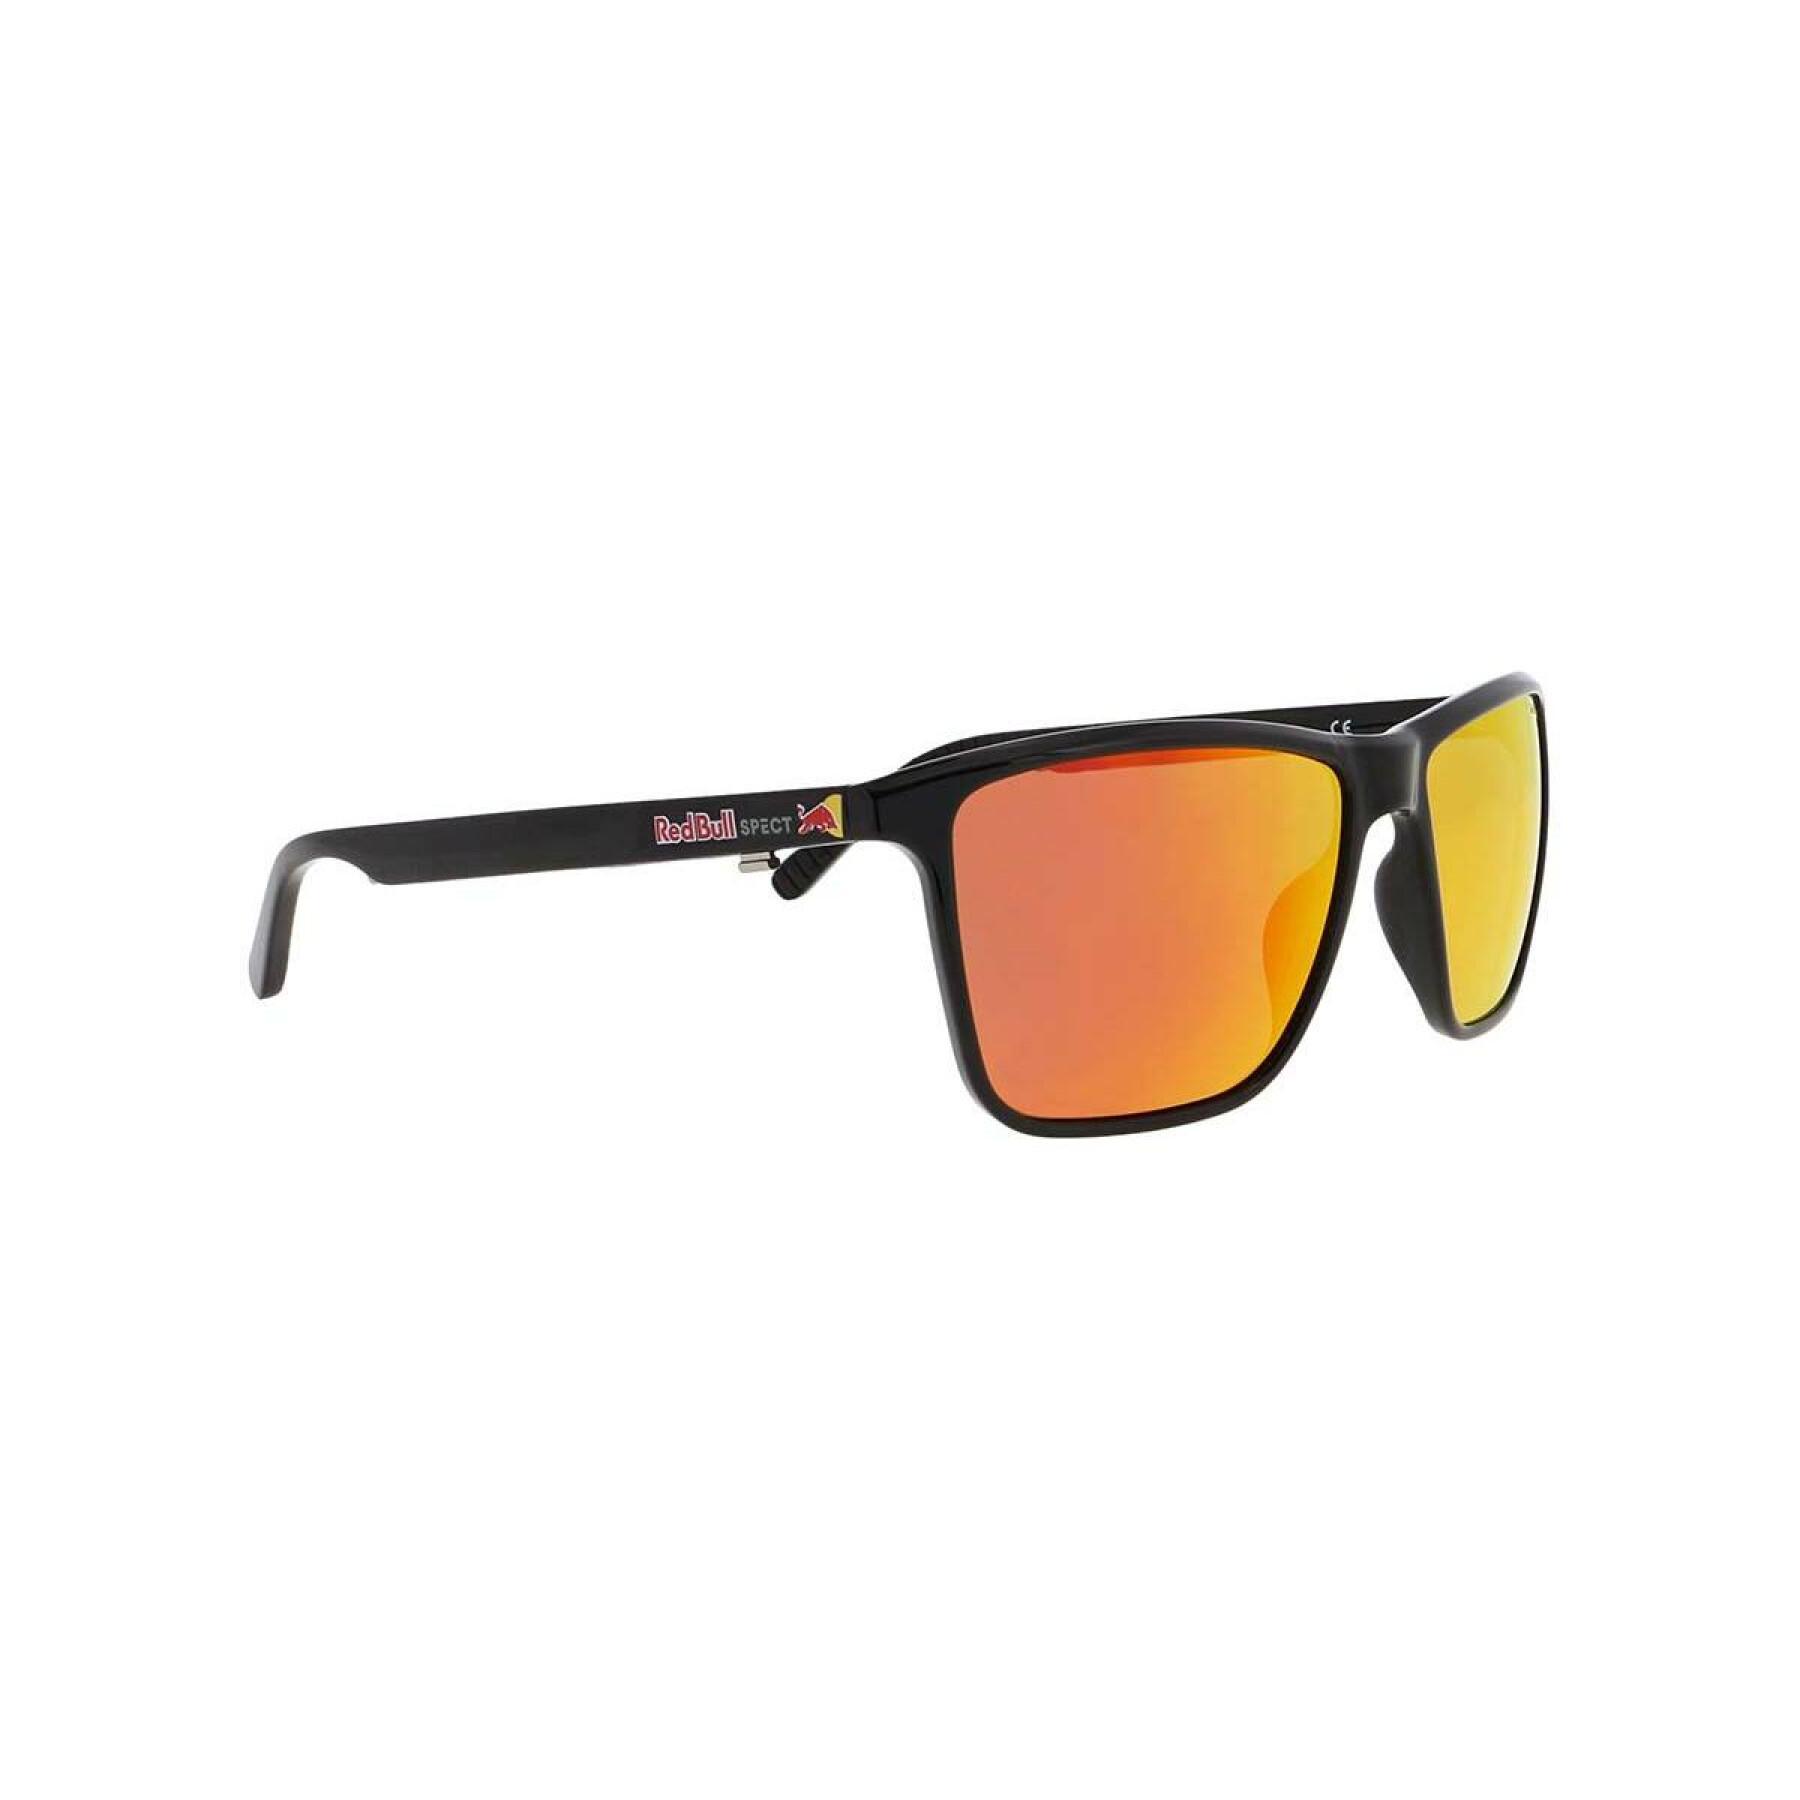 Óculos de sol Redbull Spect Eyewear Blade-001P